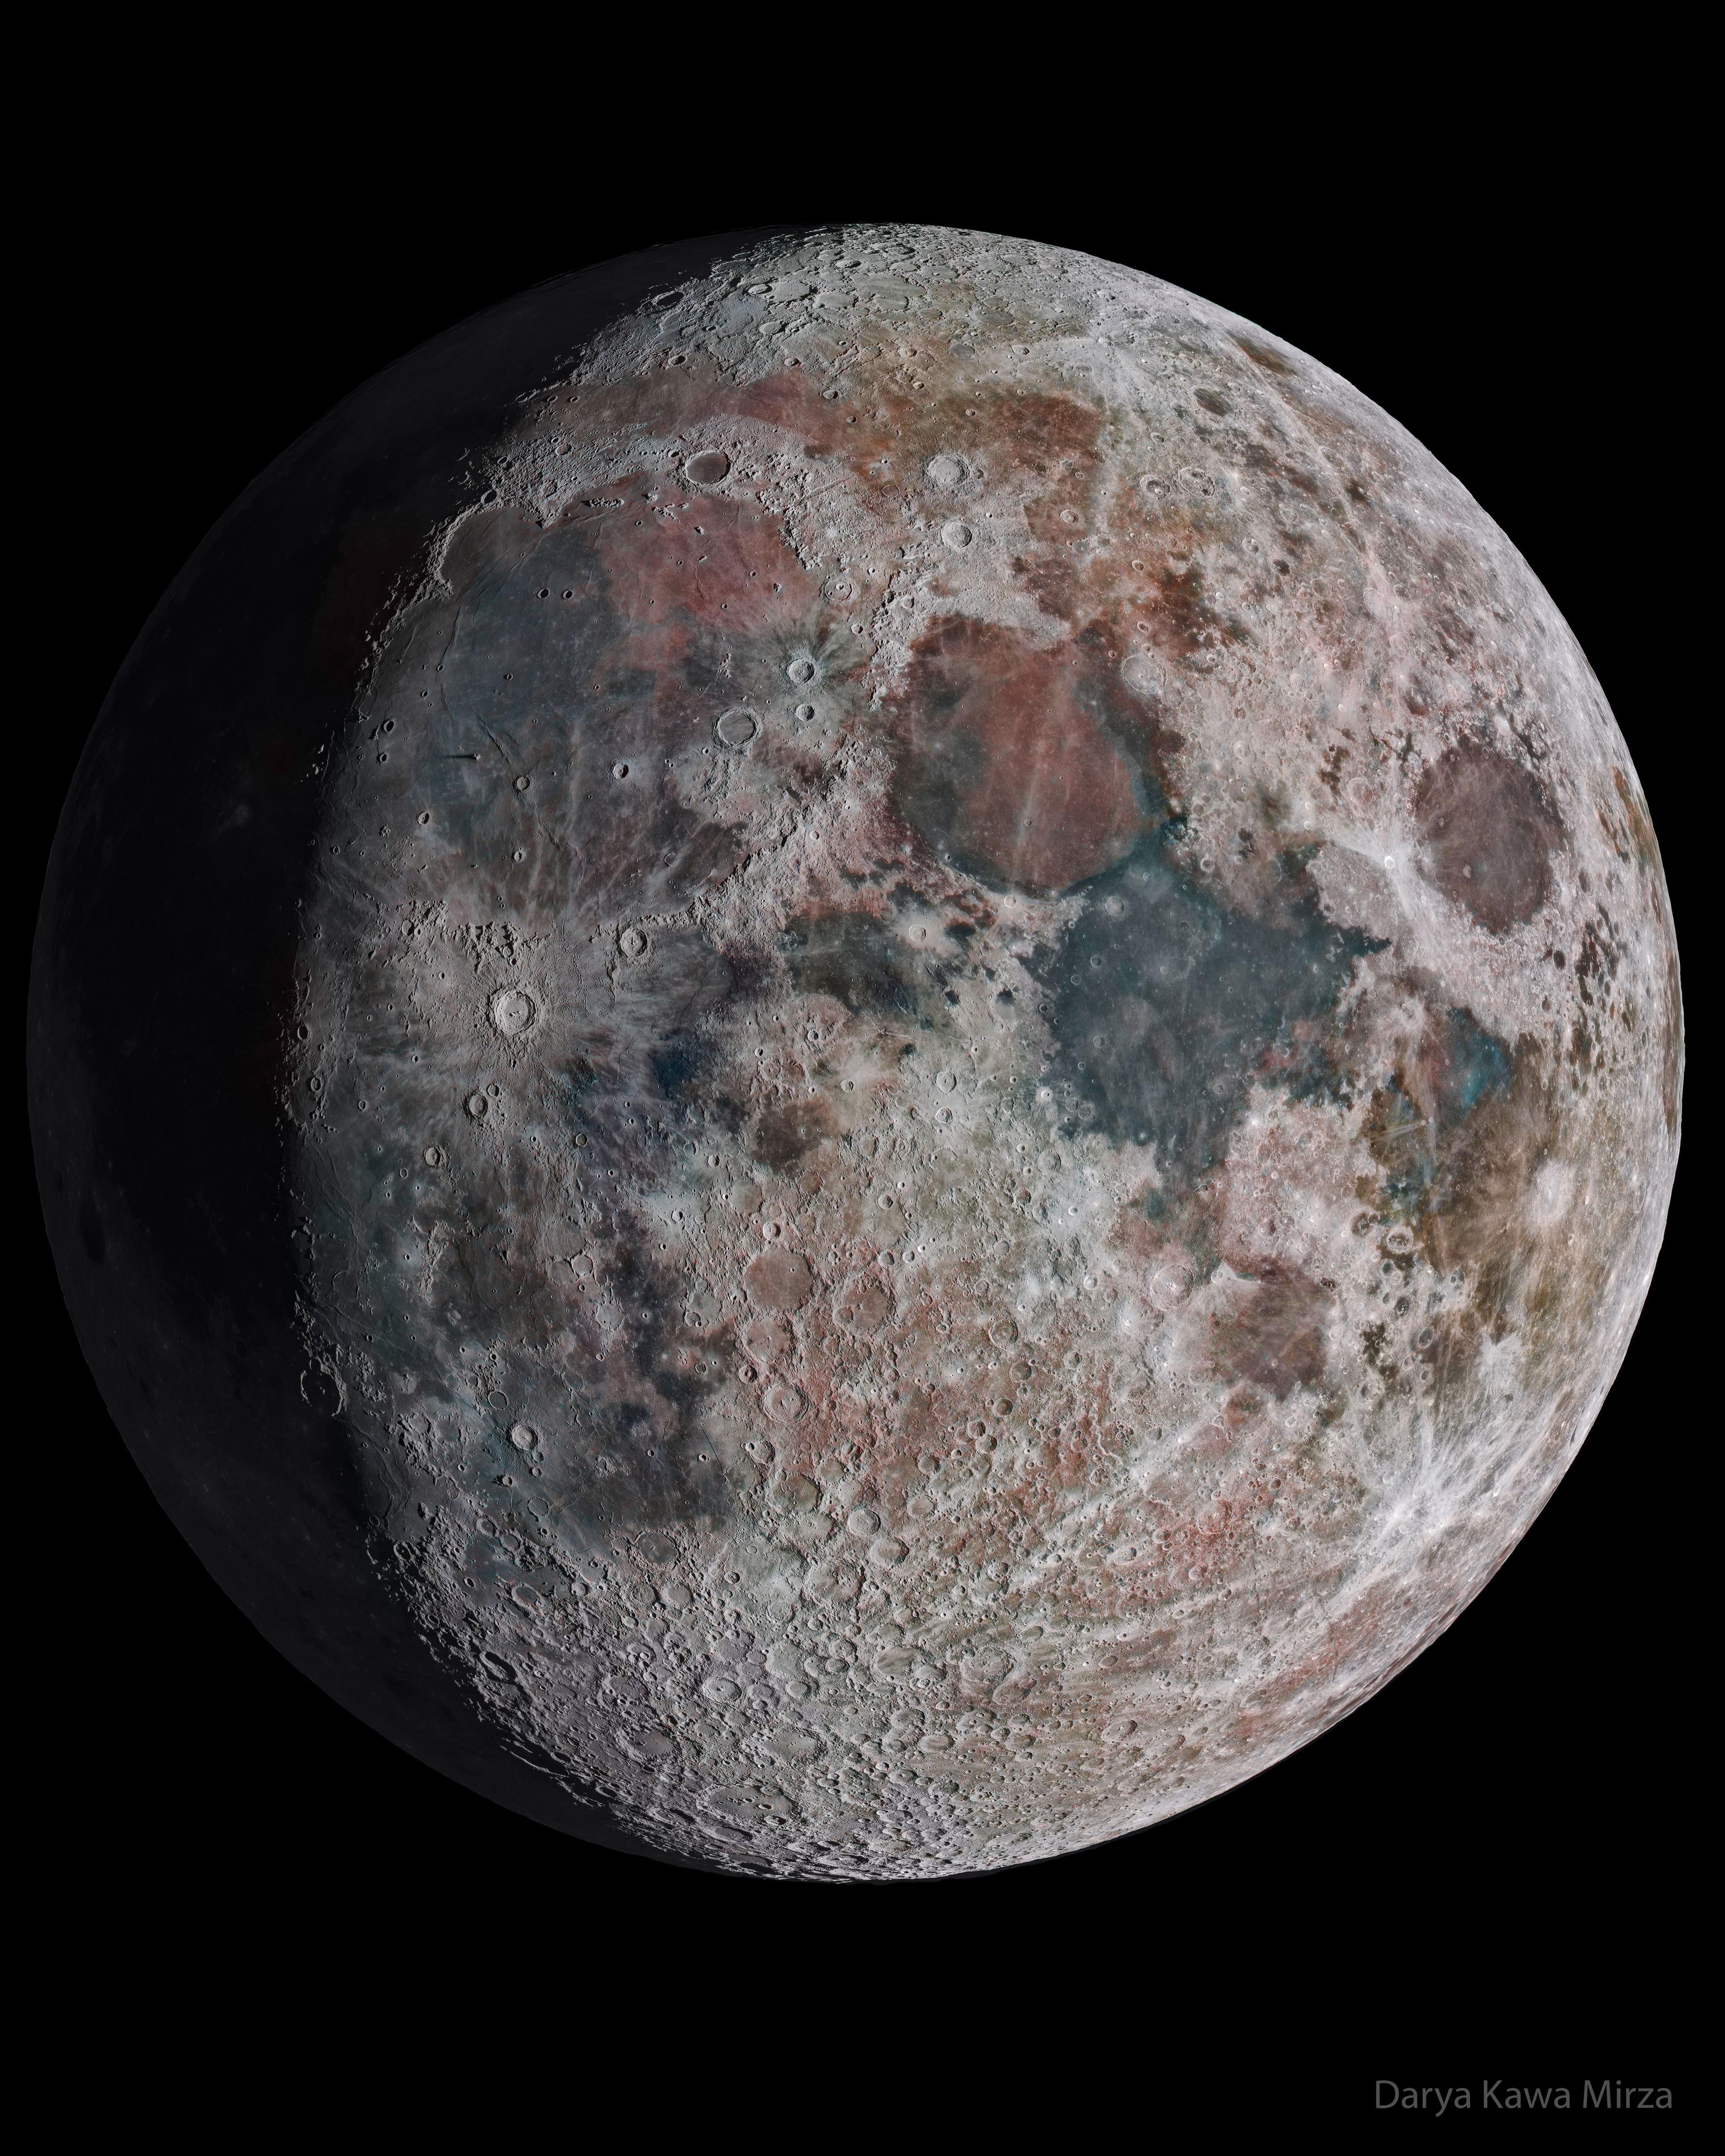 صورةٌ لقمر الأرض لكن مع مبالغةٍ في التفاصيل والألوان.